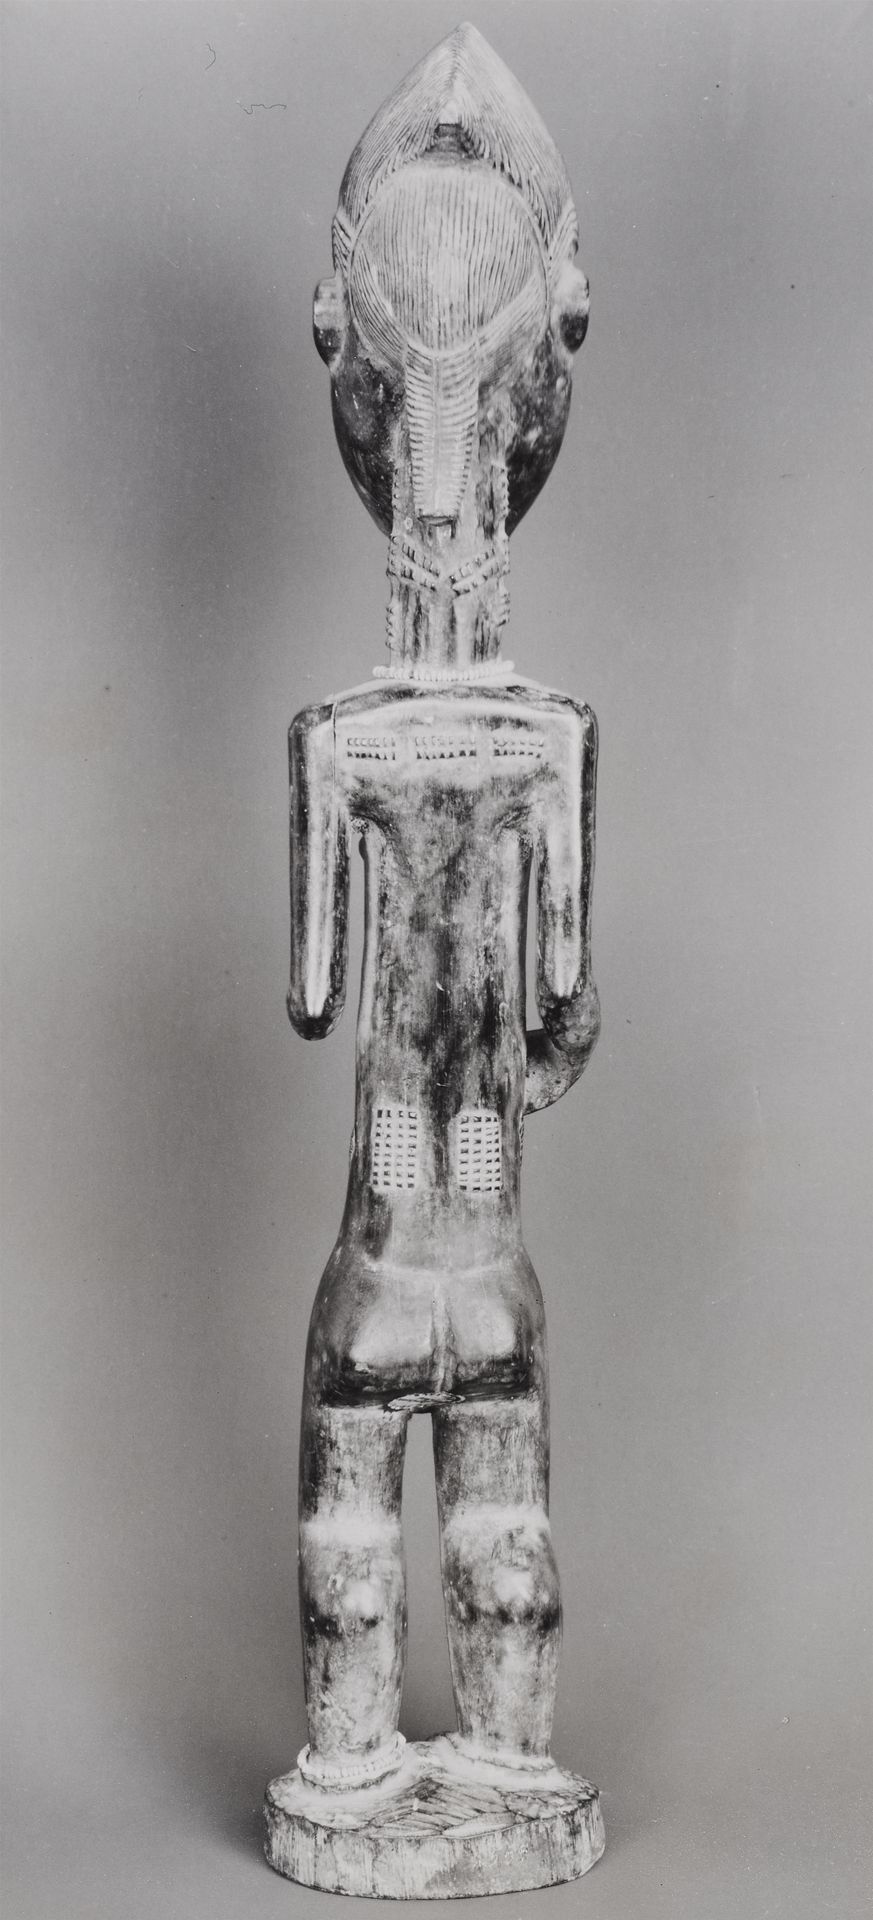 Walker Evans Walker Evans



Baule Figure, Africa, Côte d'Ivoire

1936



Vintag&hellip;